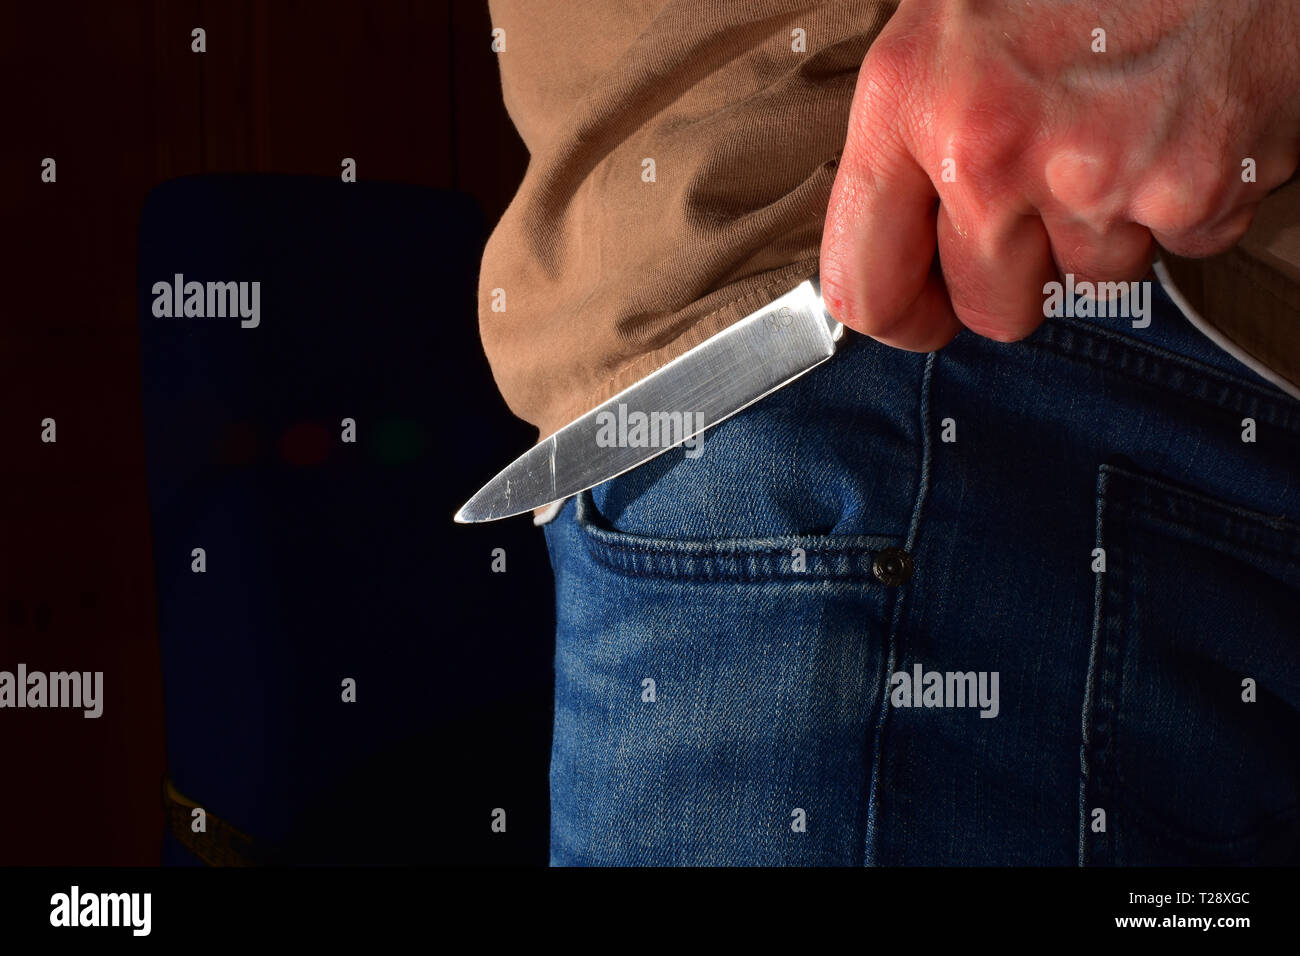 La criminalité couteau - homme tenant un couteau pointu Banque D'Images